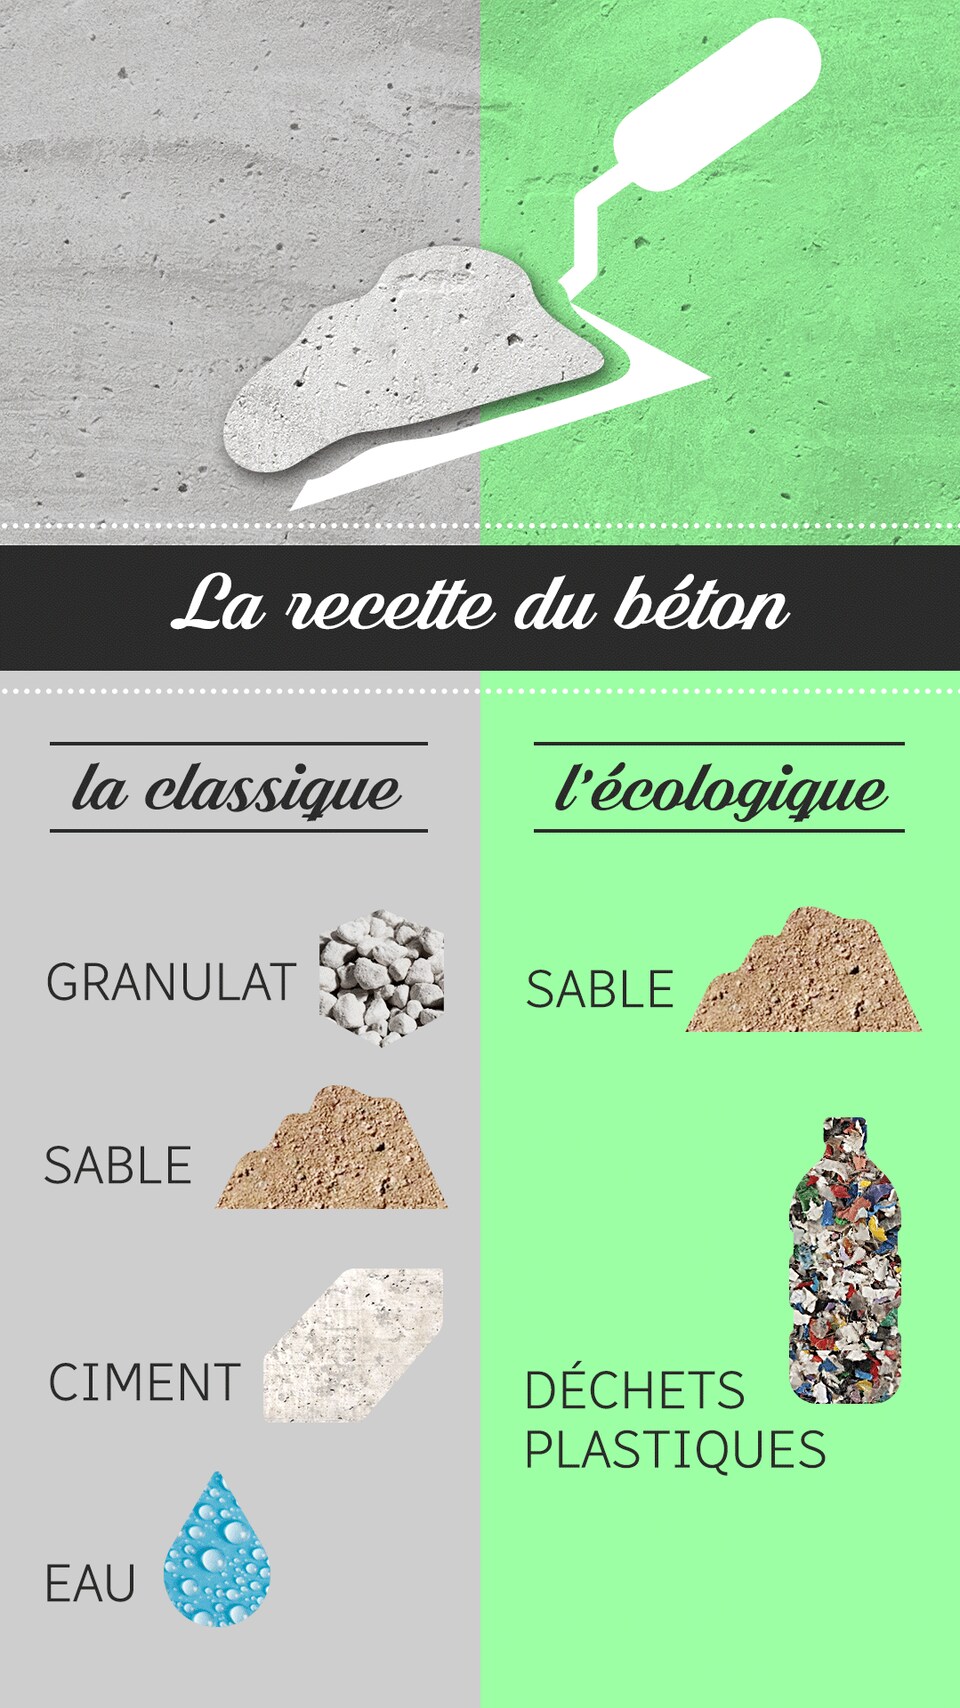 La recette du béton classique : Granulat, sable, eau et ciment.
La recette du béton écologique : sable, déchets plastiques.